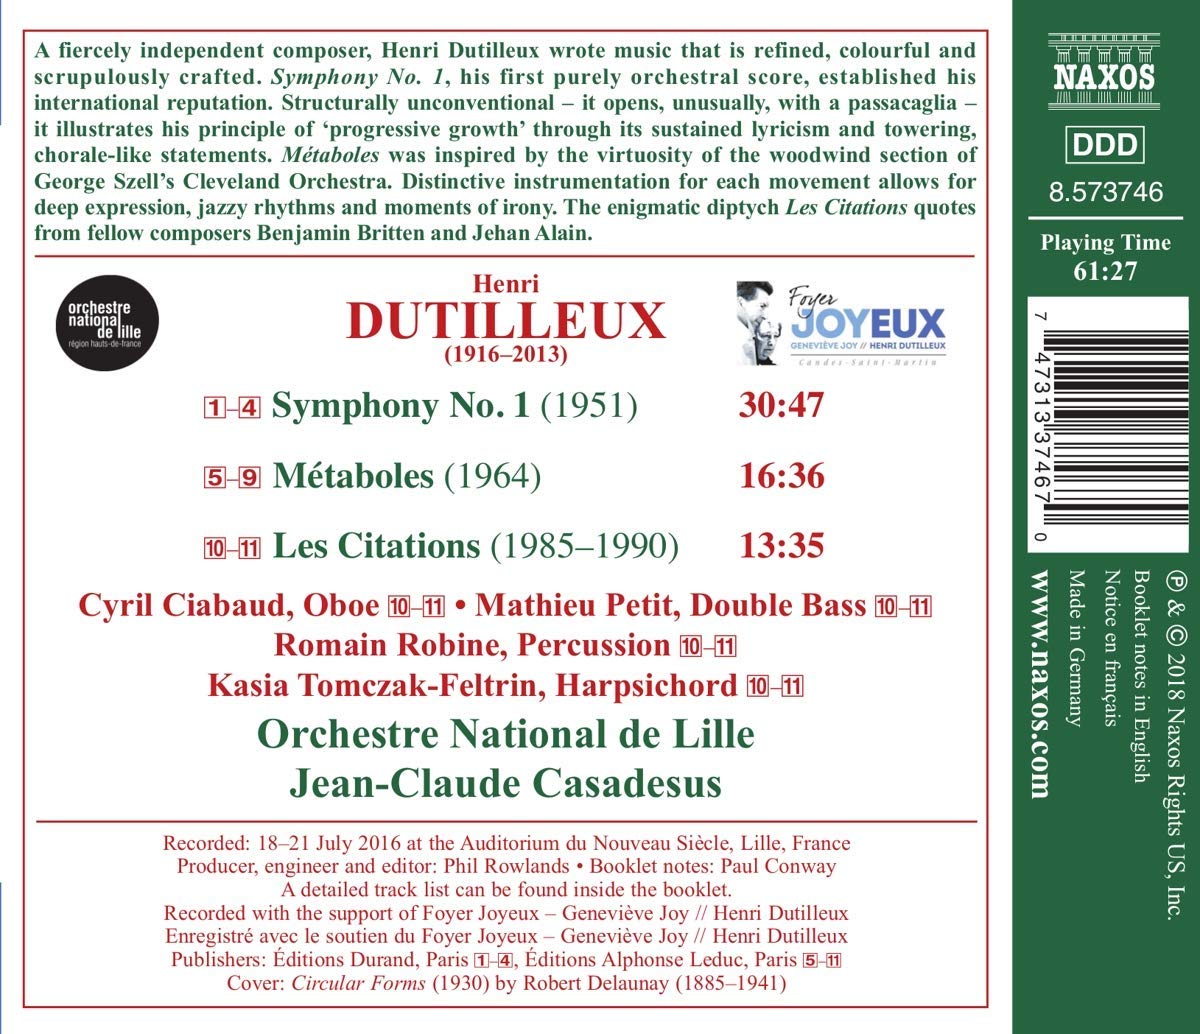 Jean-Claude Casadesus 뒤티외: 교향곡 1번, 메타볼 & 레 시타시옹 (Dutilleux: Symphony No.1, Metaboles & Les citations) 장-클로드 카바도쉬